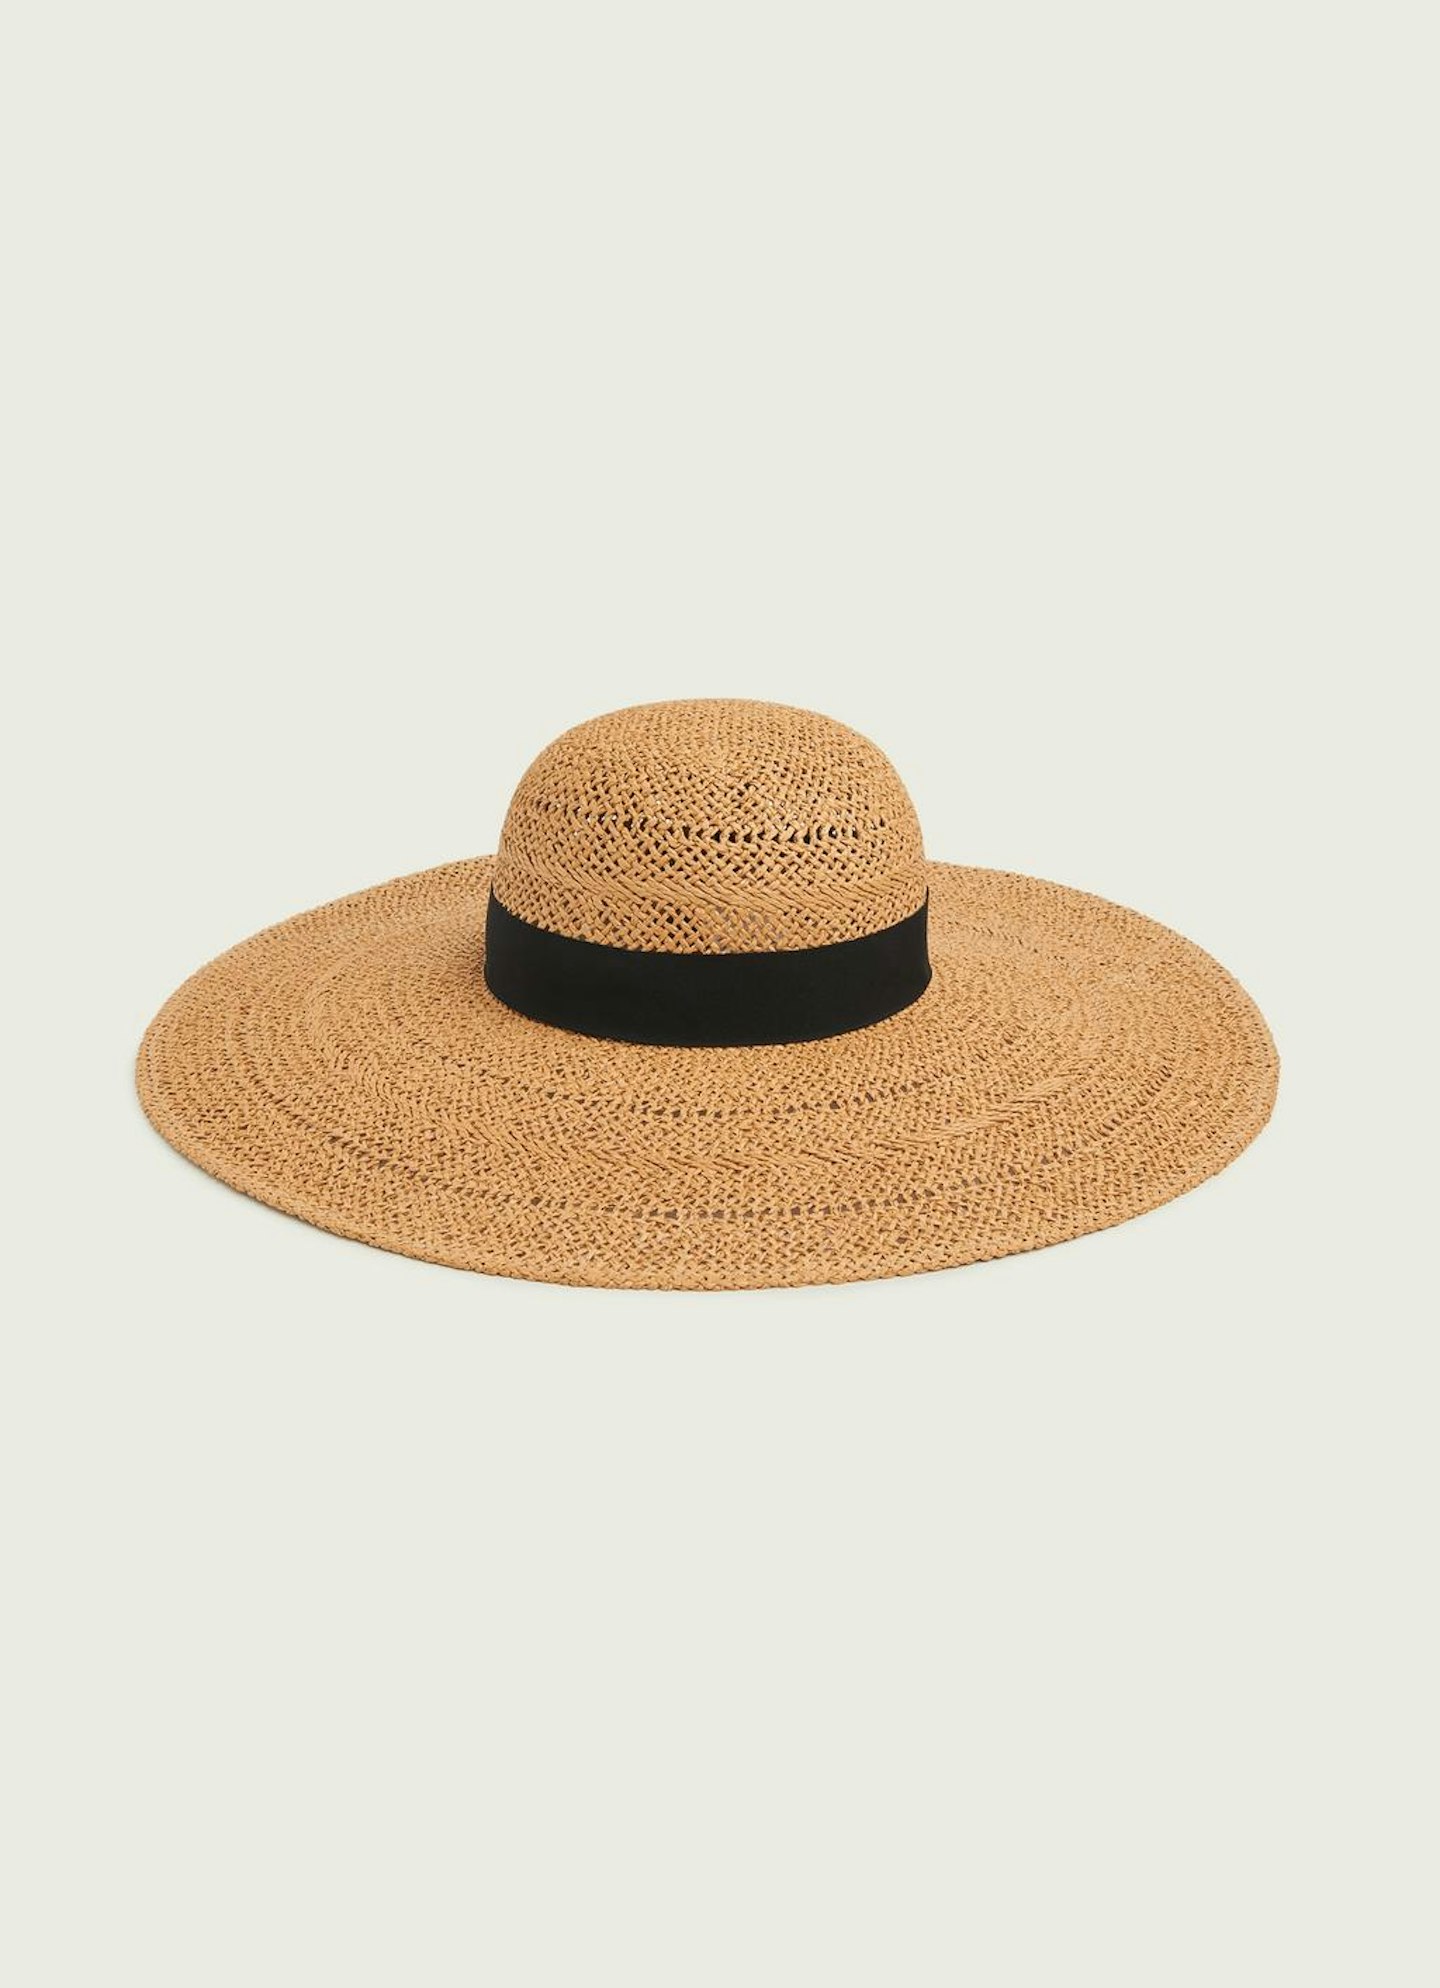 LK Bennett, Saffron Straw Floppy Sun Hat